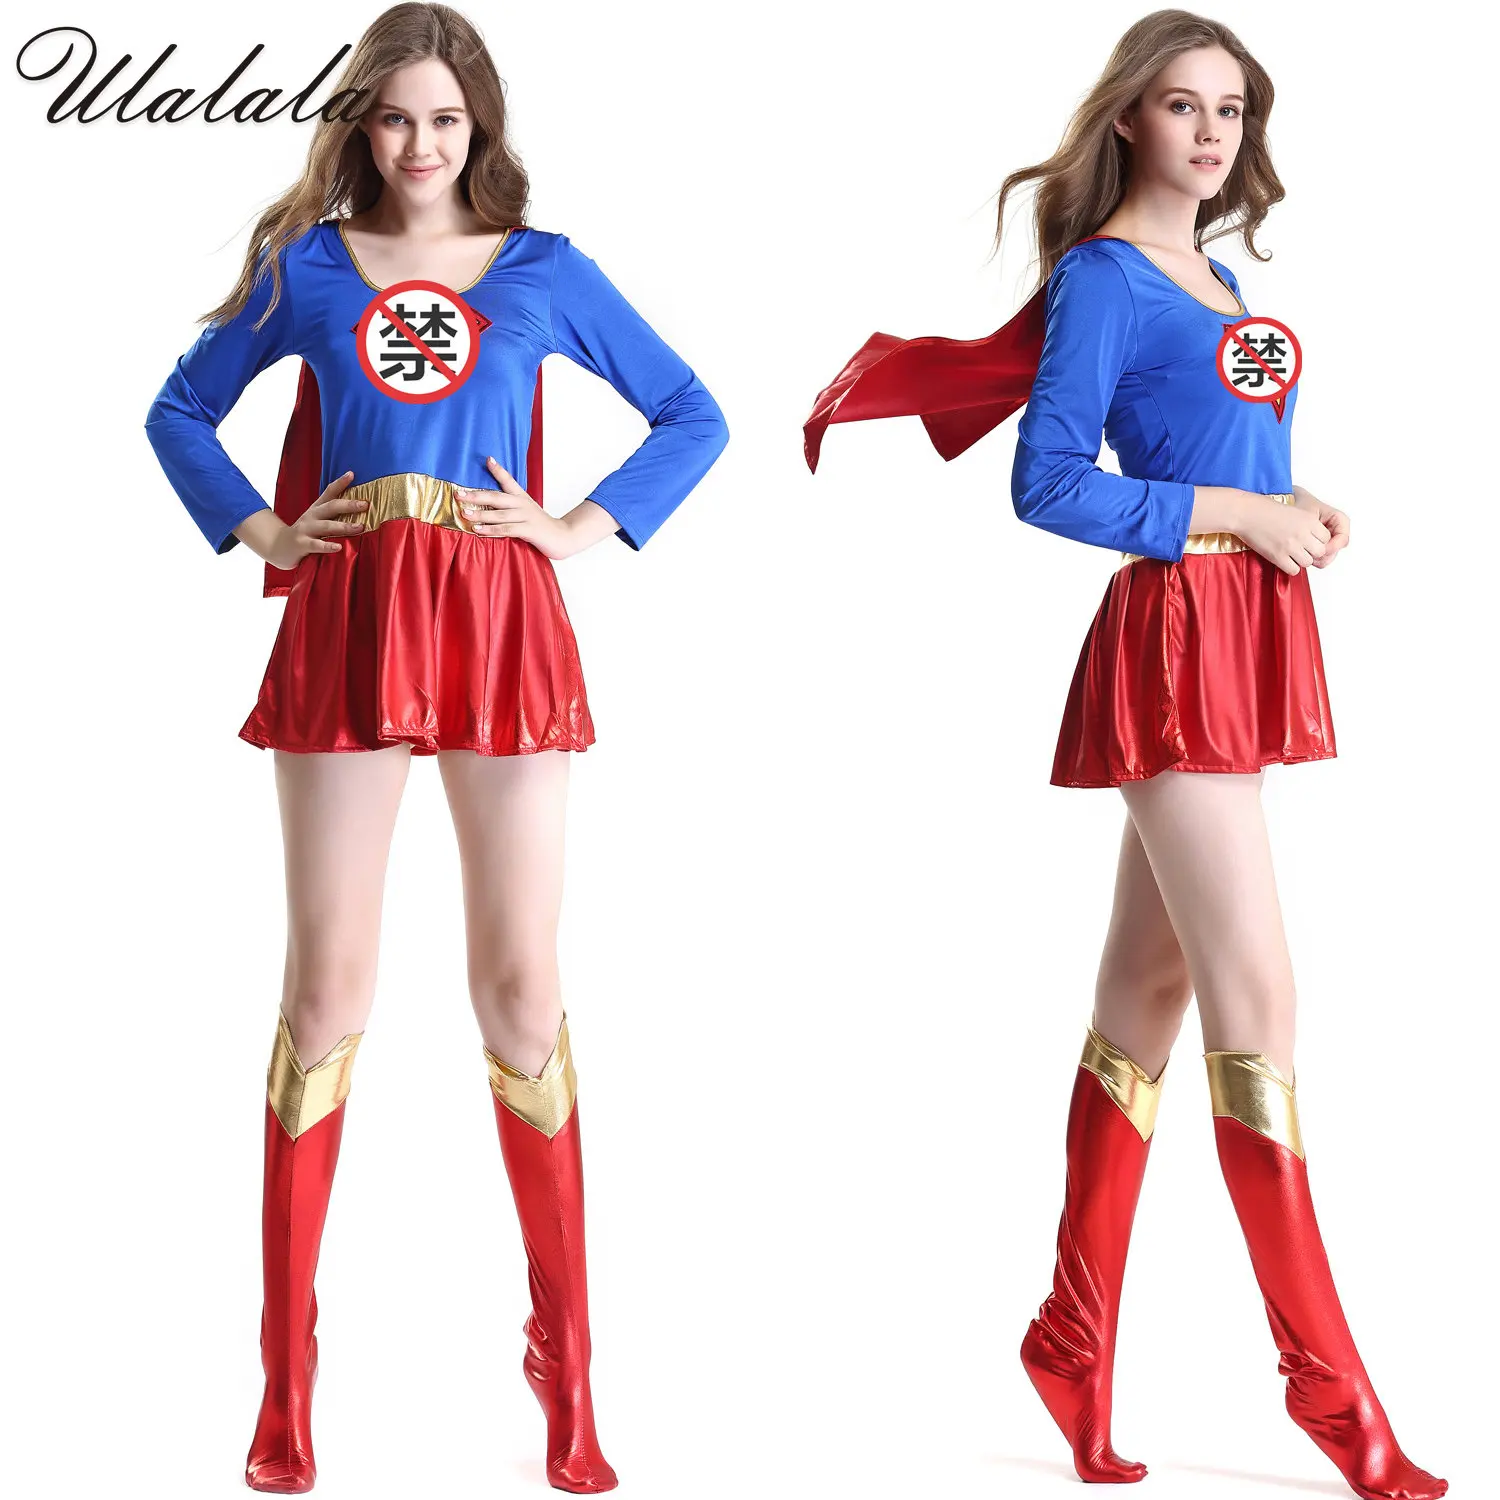 

Платье Суперженщины, костюмы для косплея, супер яркие чехлы, костюм супергероя, женский сексуальный костюм супергероя на Хэллоуин